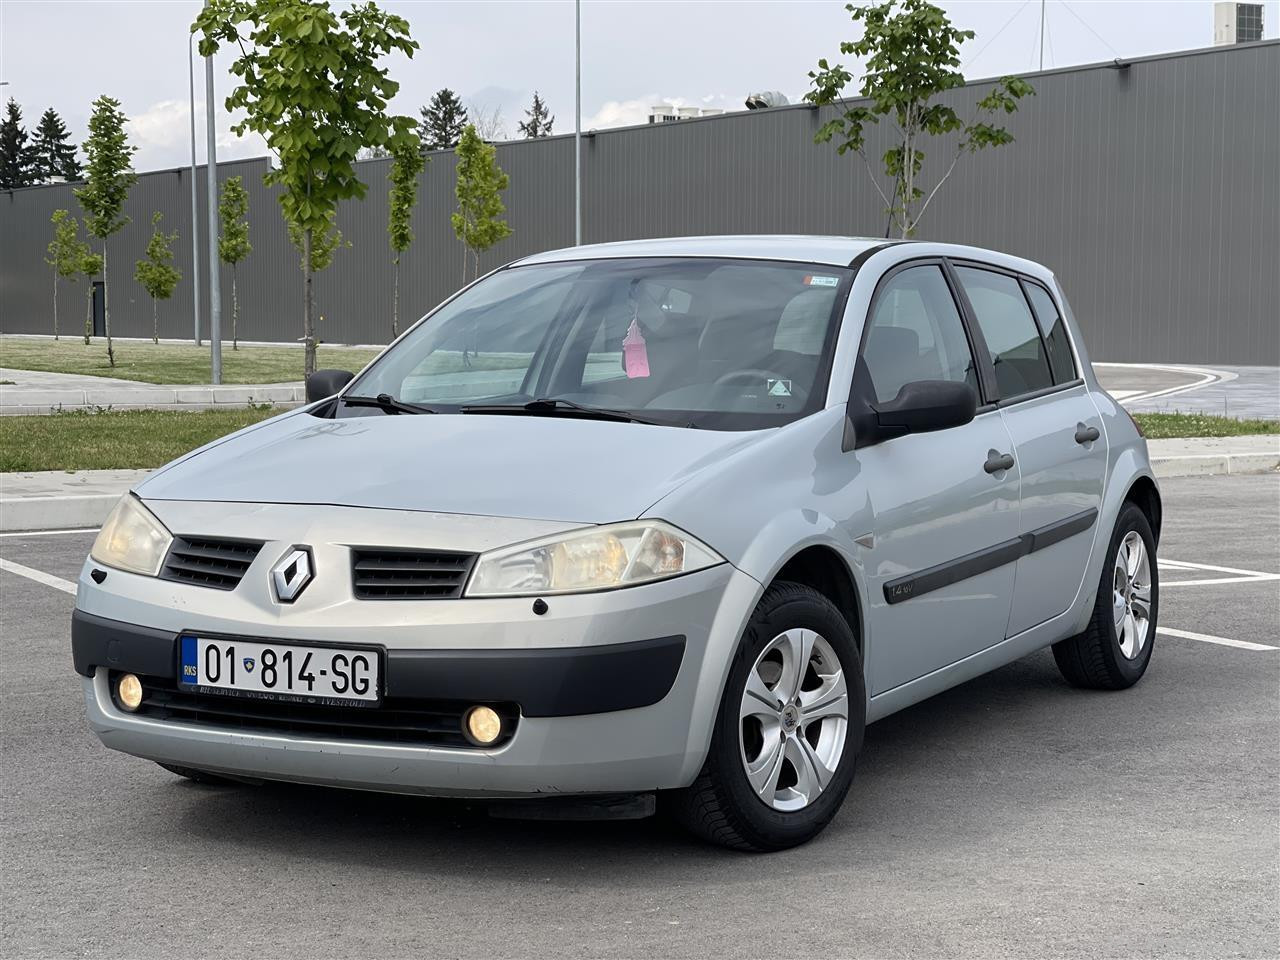 Renault Megane 1.4 benzin-2003,KM:161xxx te kalume